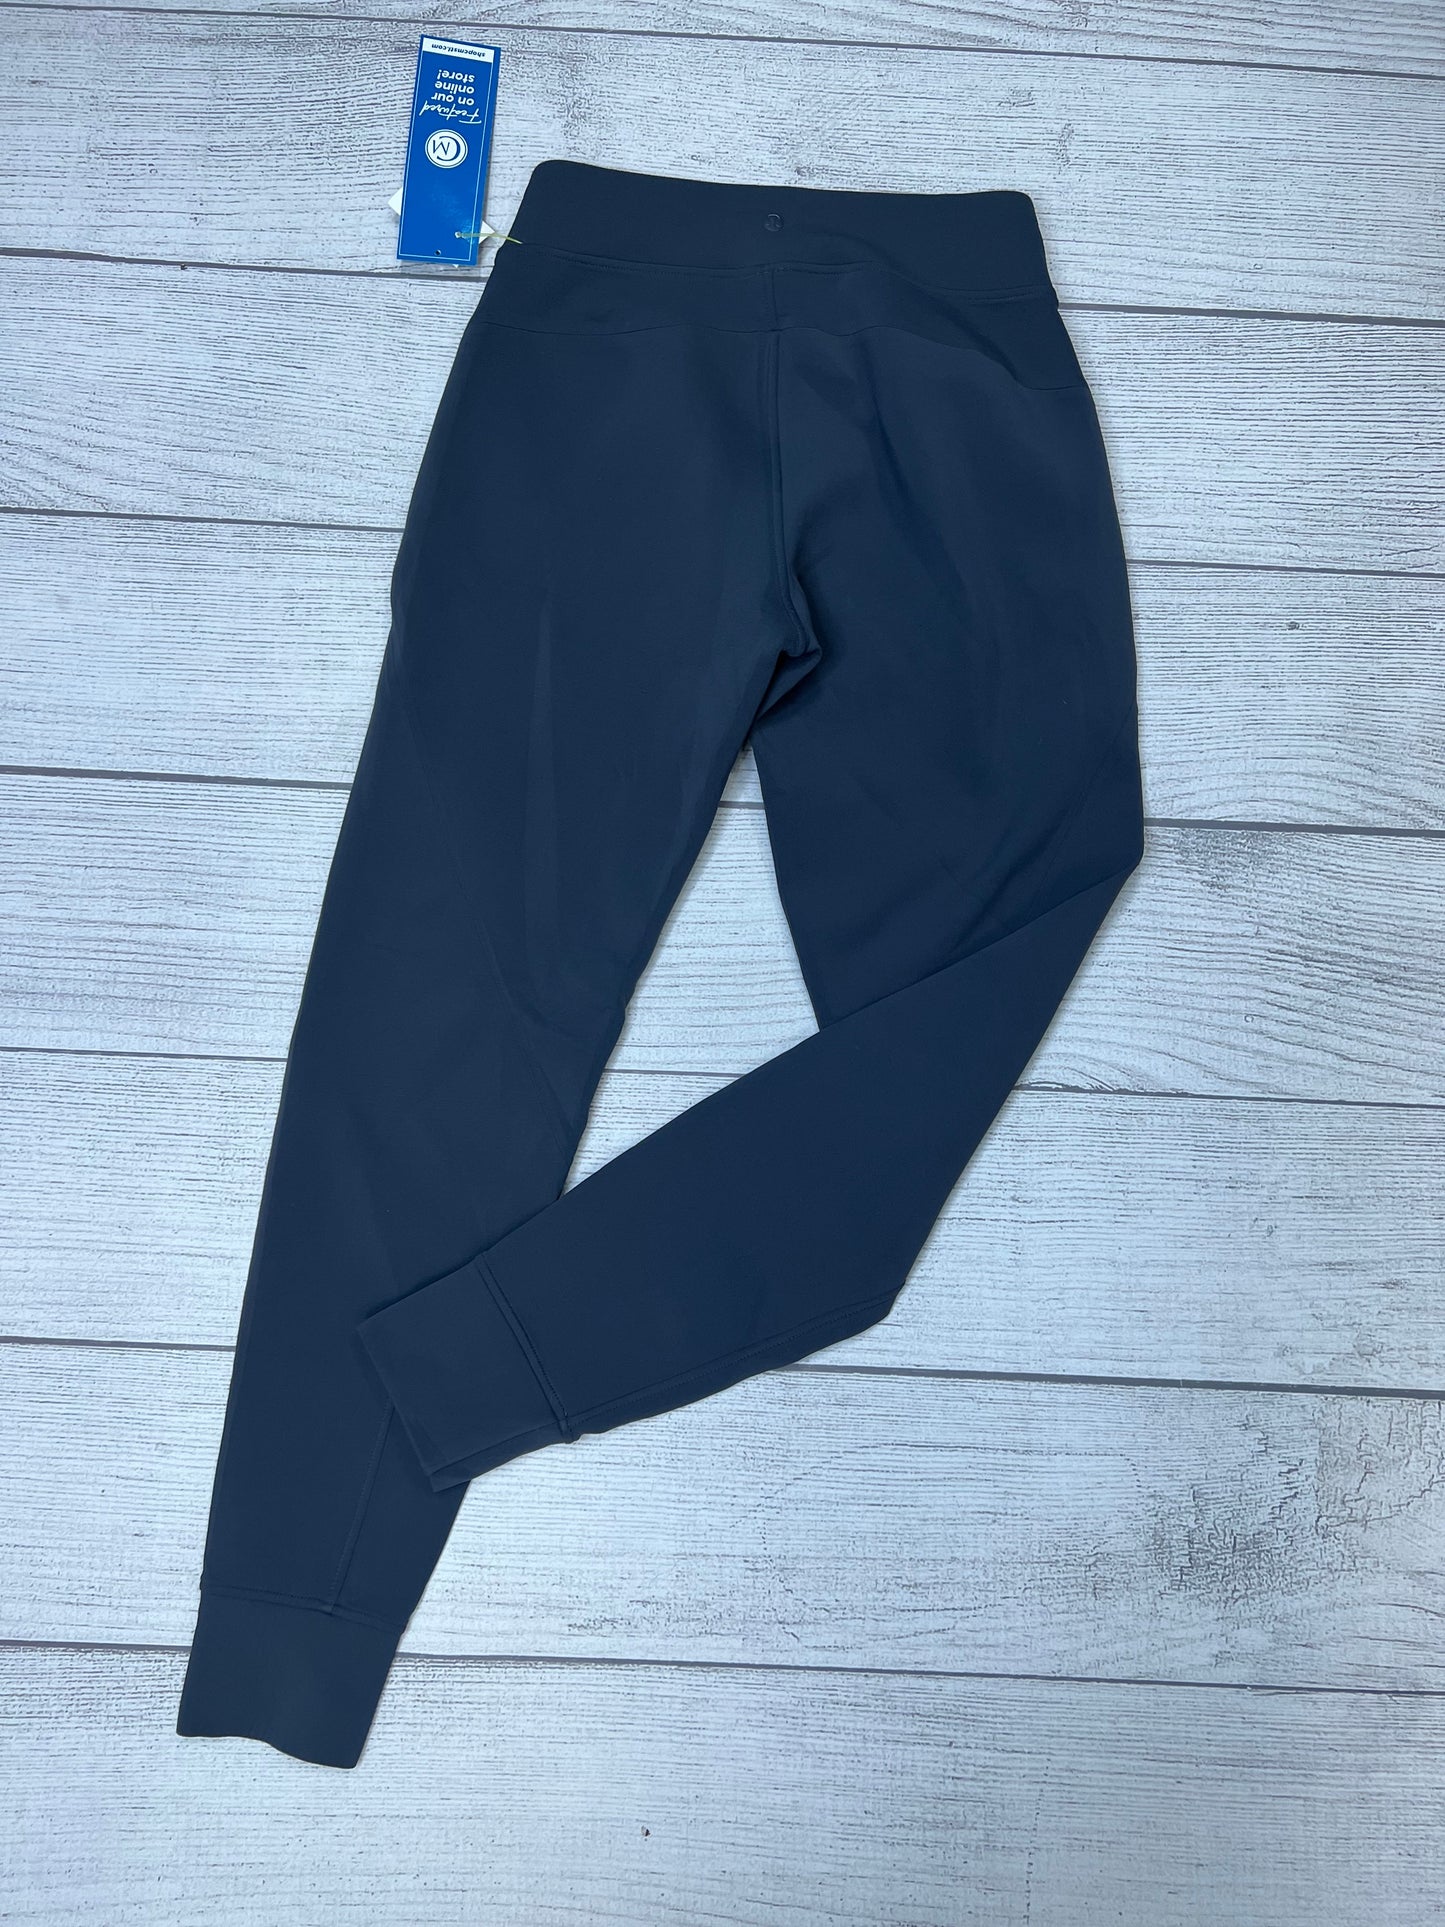 Grey Athletic Pants Lululemon, Size 4